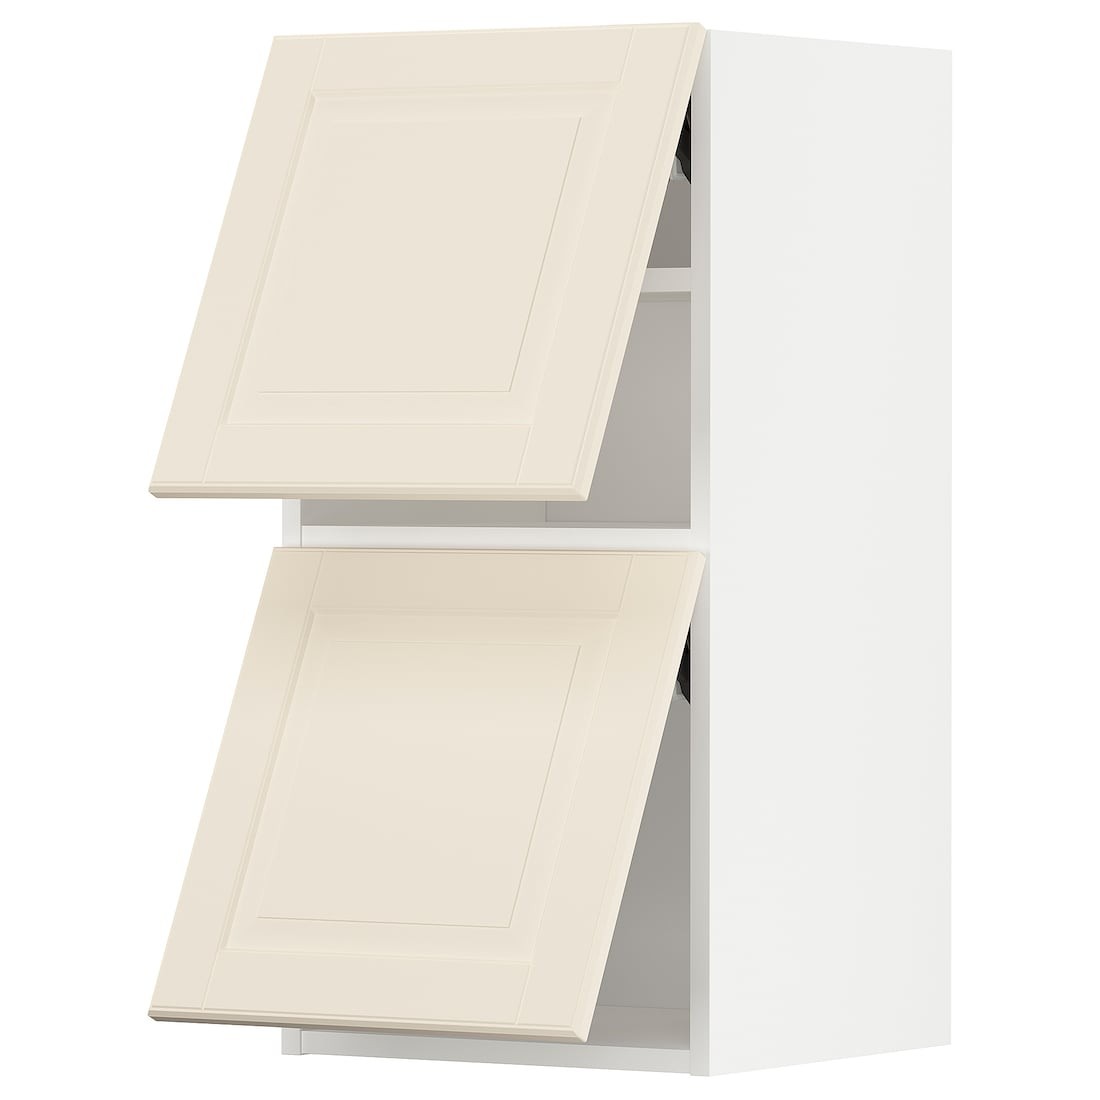 METOD МЕТОД Навесной горизонтальный шкаф / 2 двери, белый / Bodbyn кремовый, 40x80 см